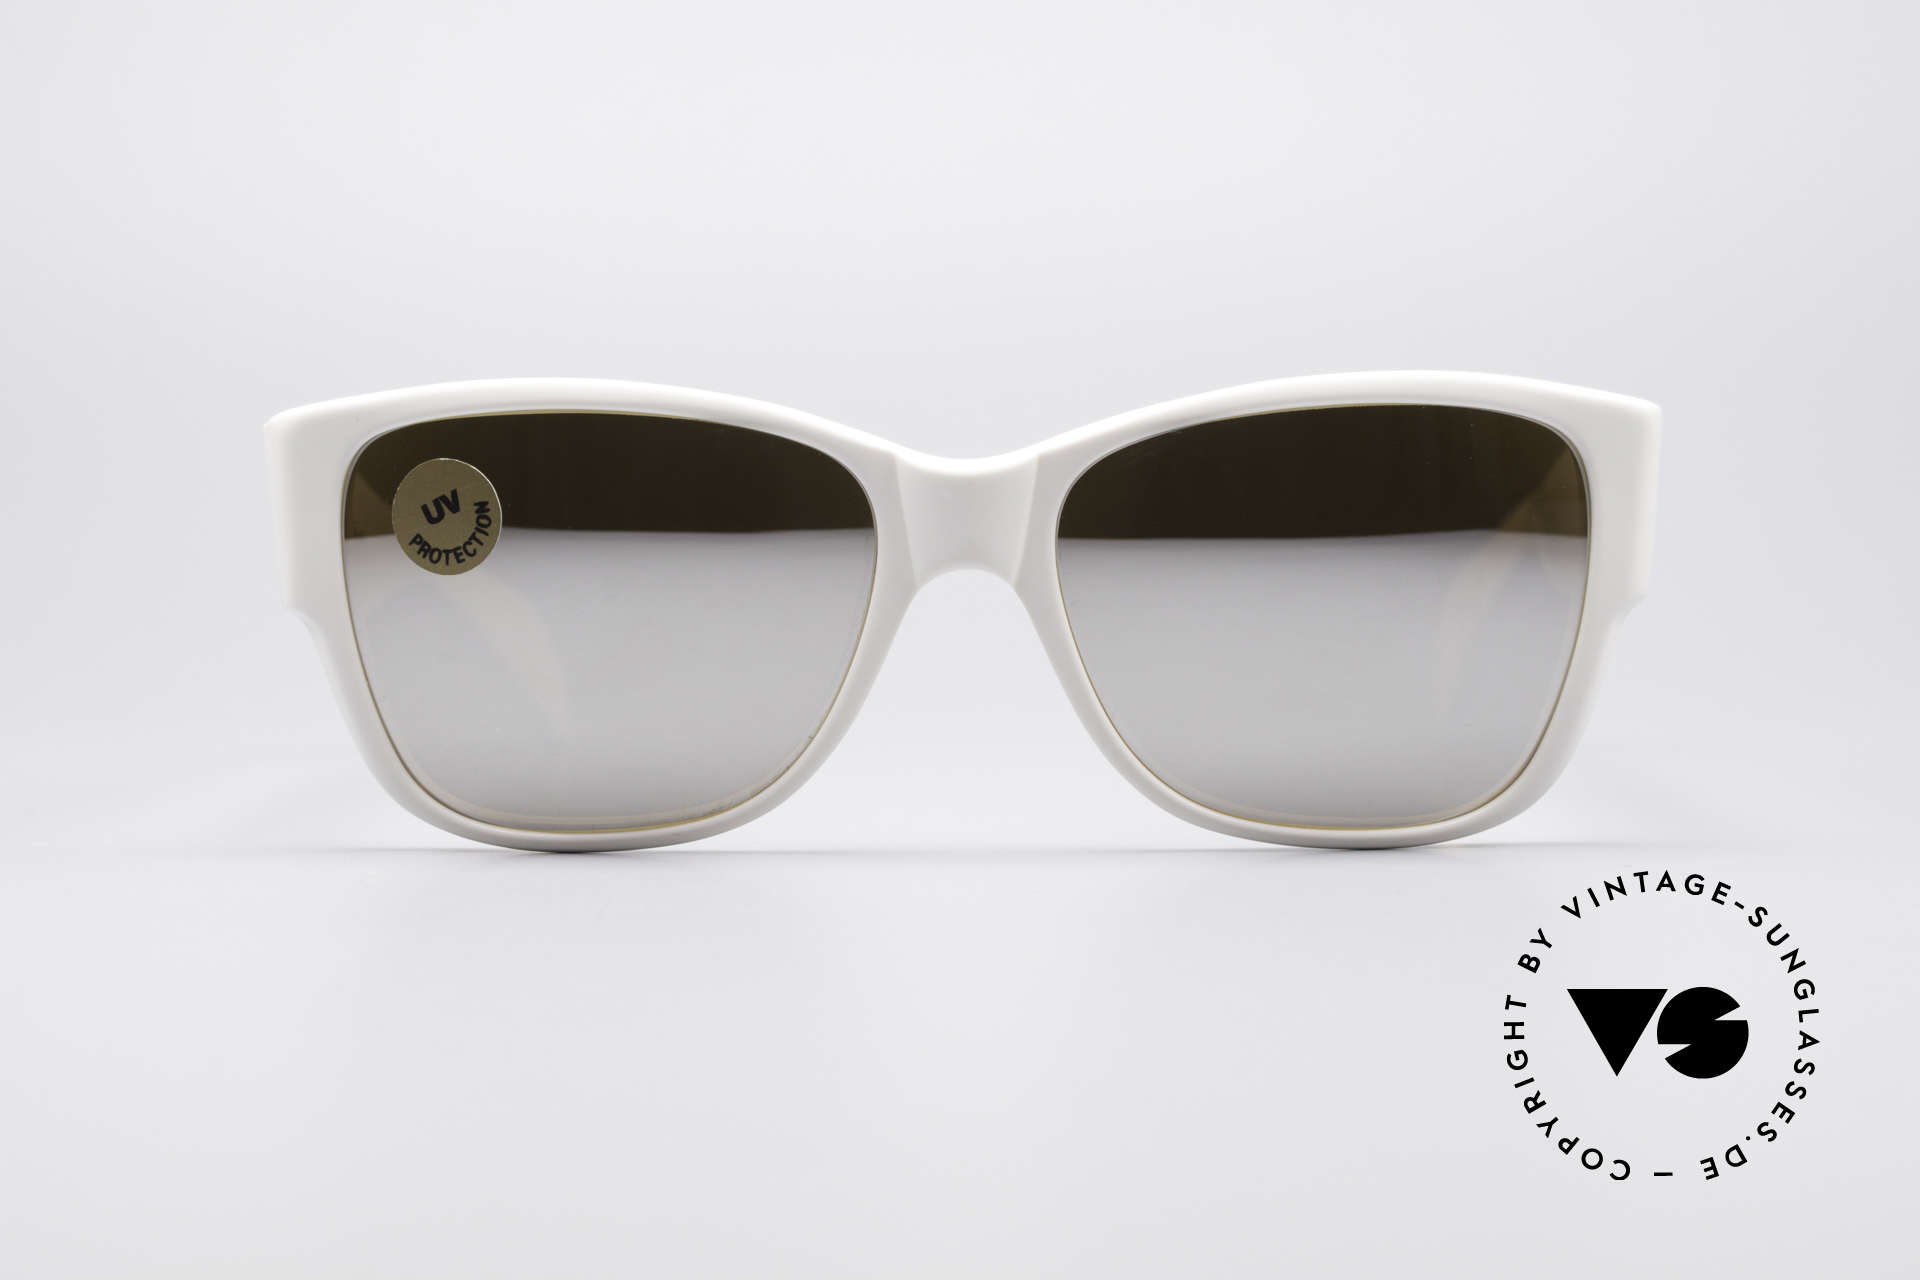 Sunglasses Persol 69218 Ratti Miami Vice 80's Shades